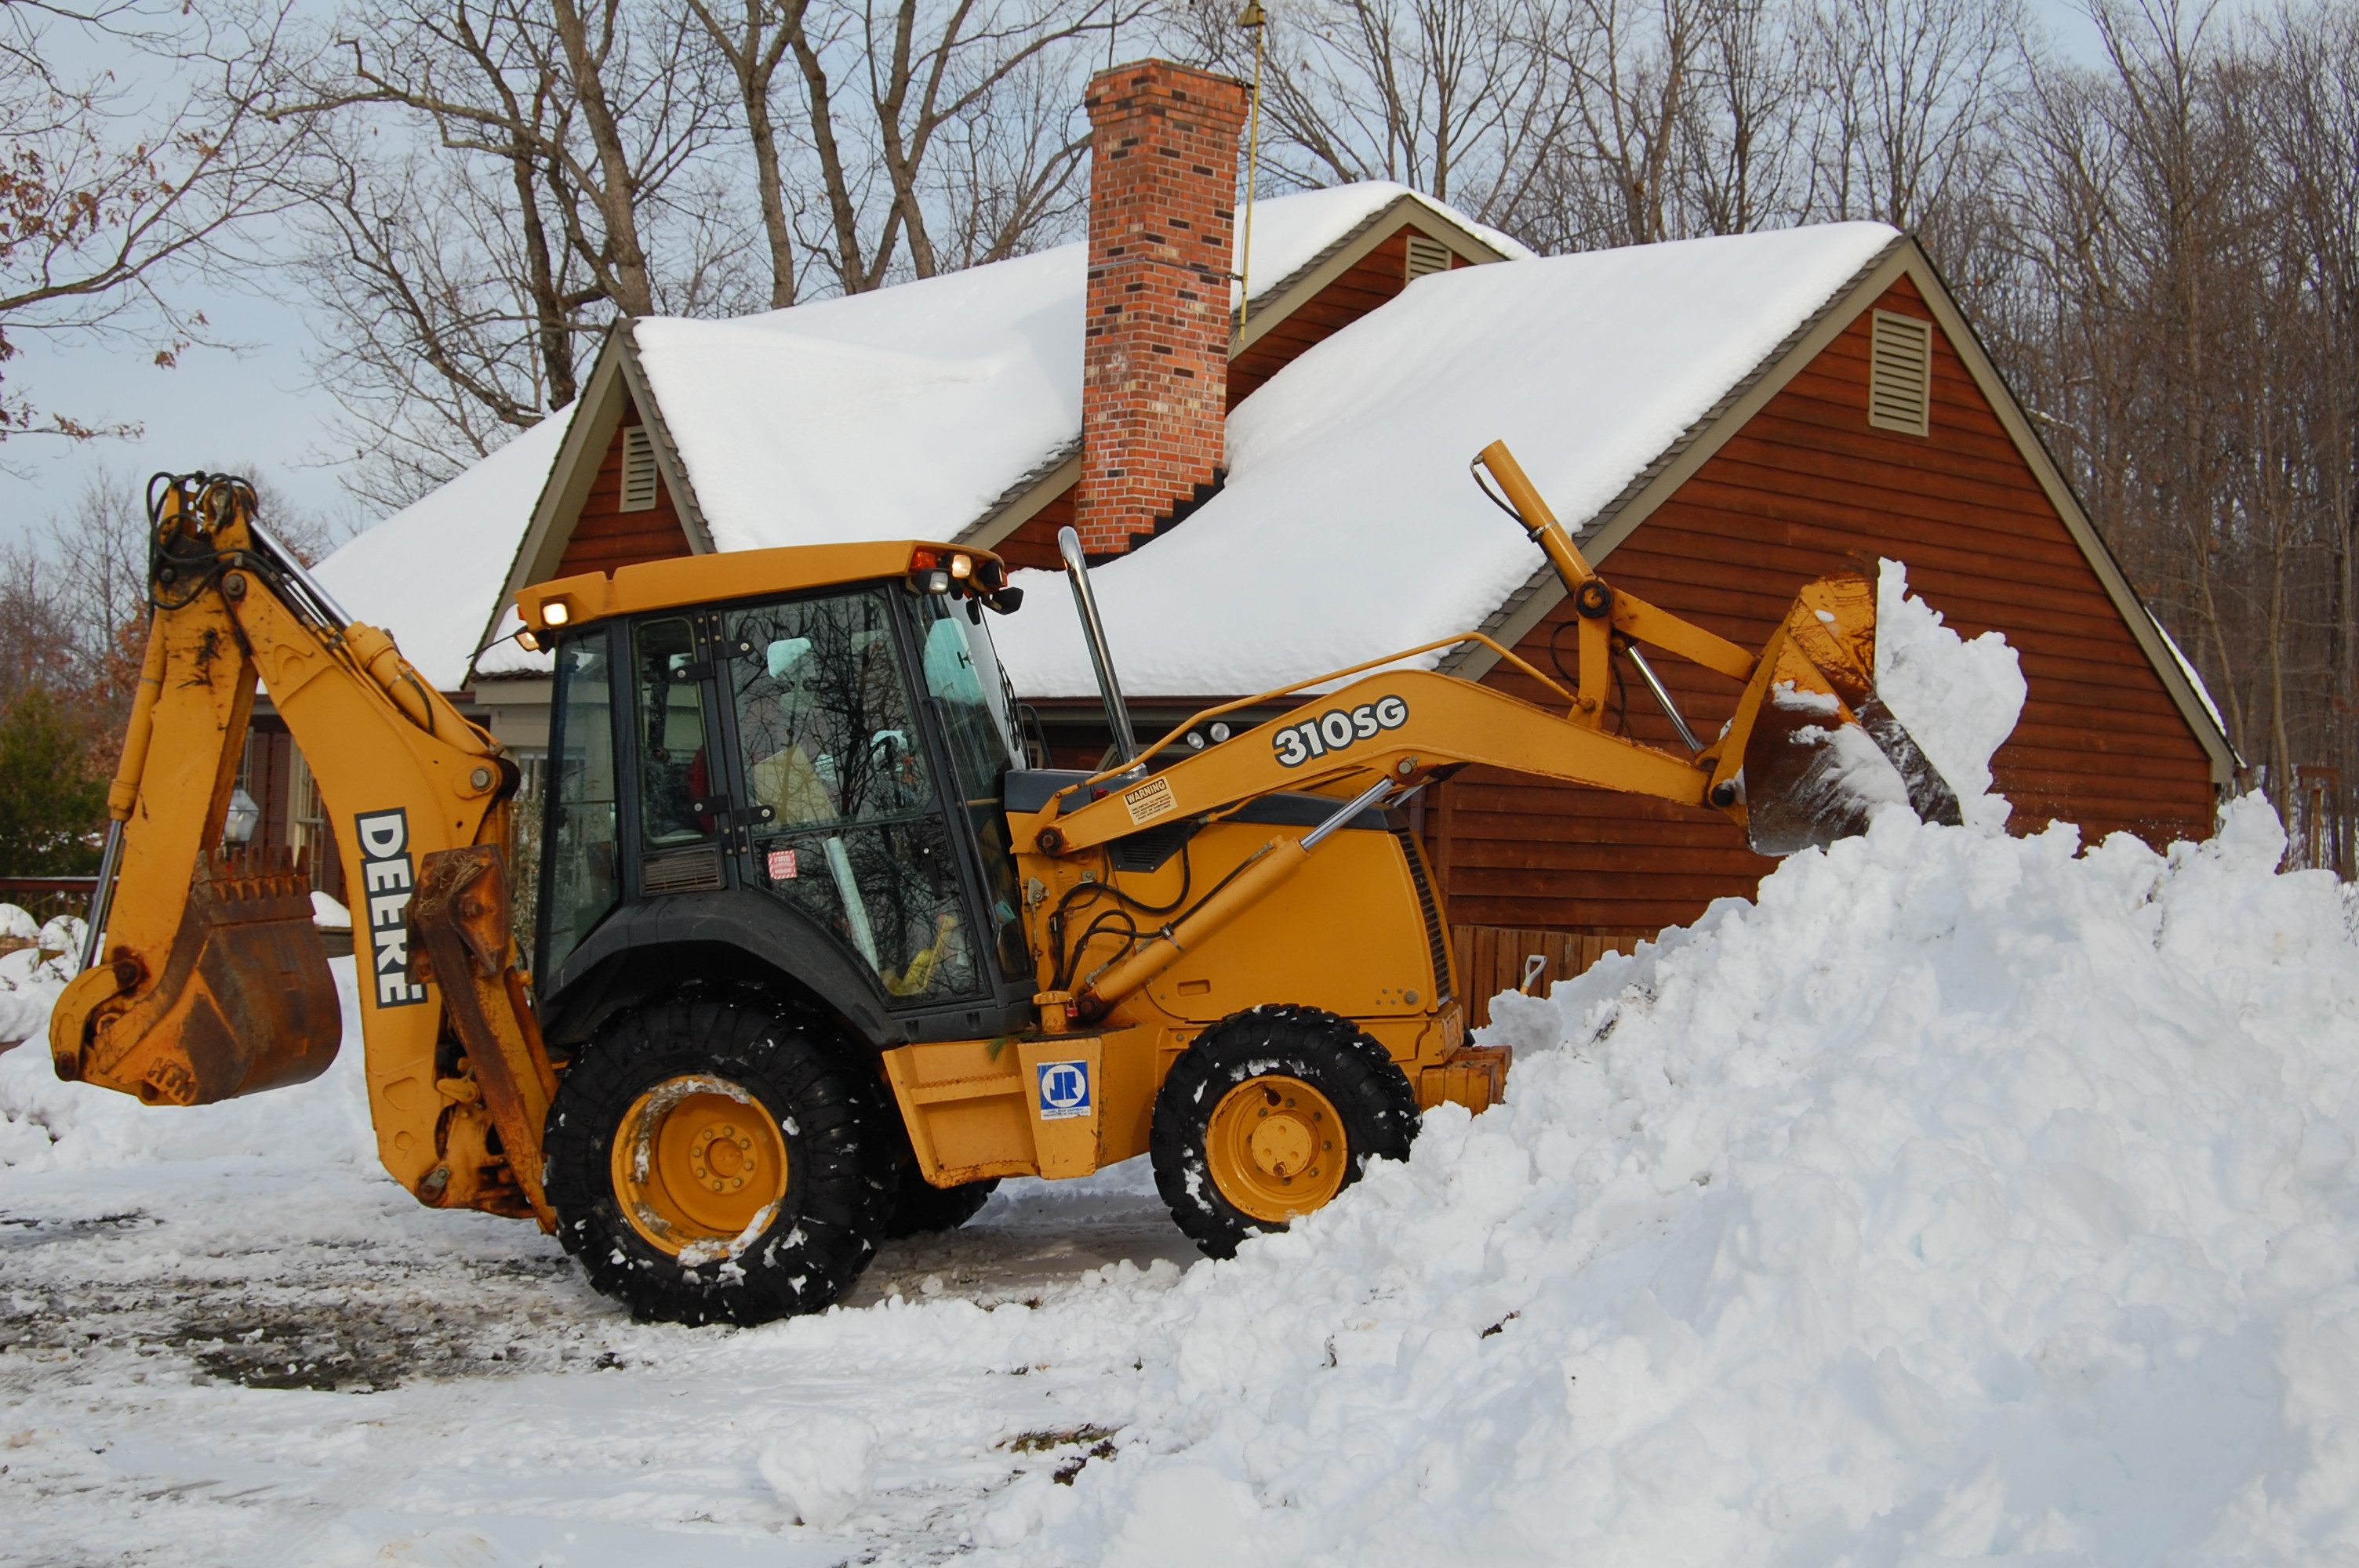 File:John Deere 310SG backhoe loader, snow removal 1.jpg ...